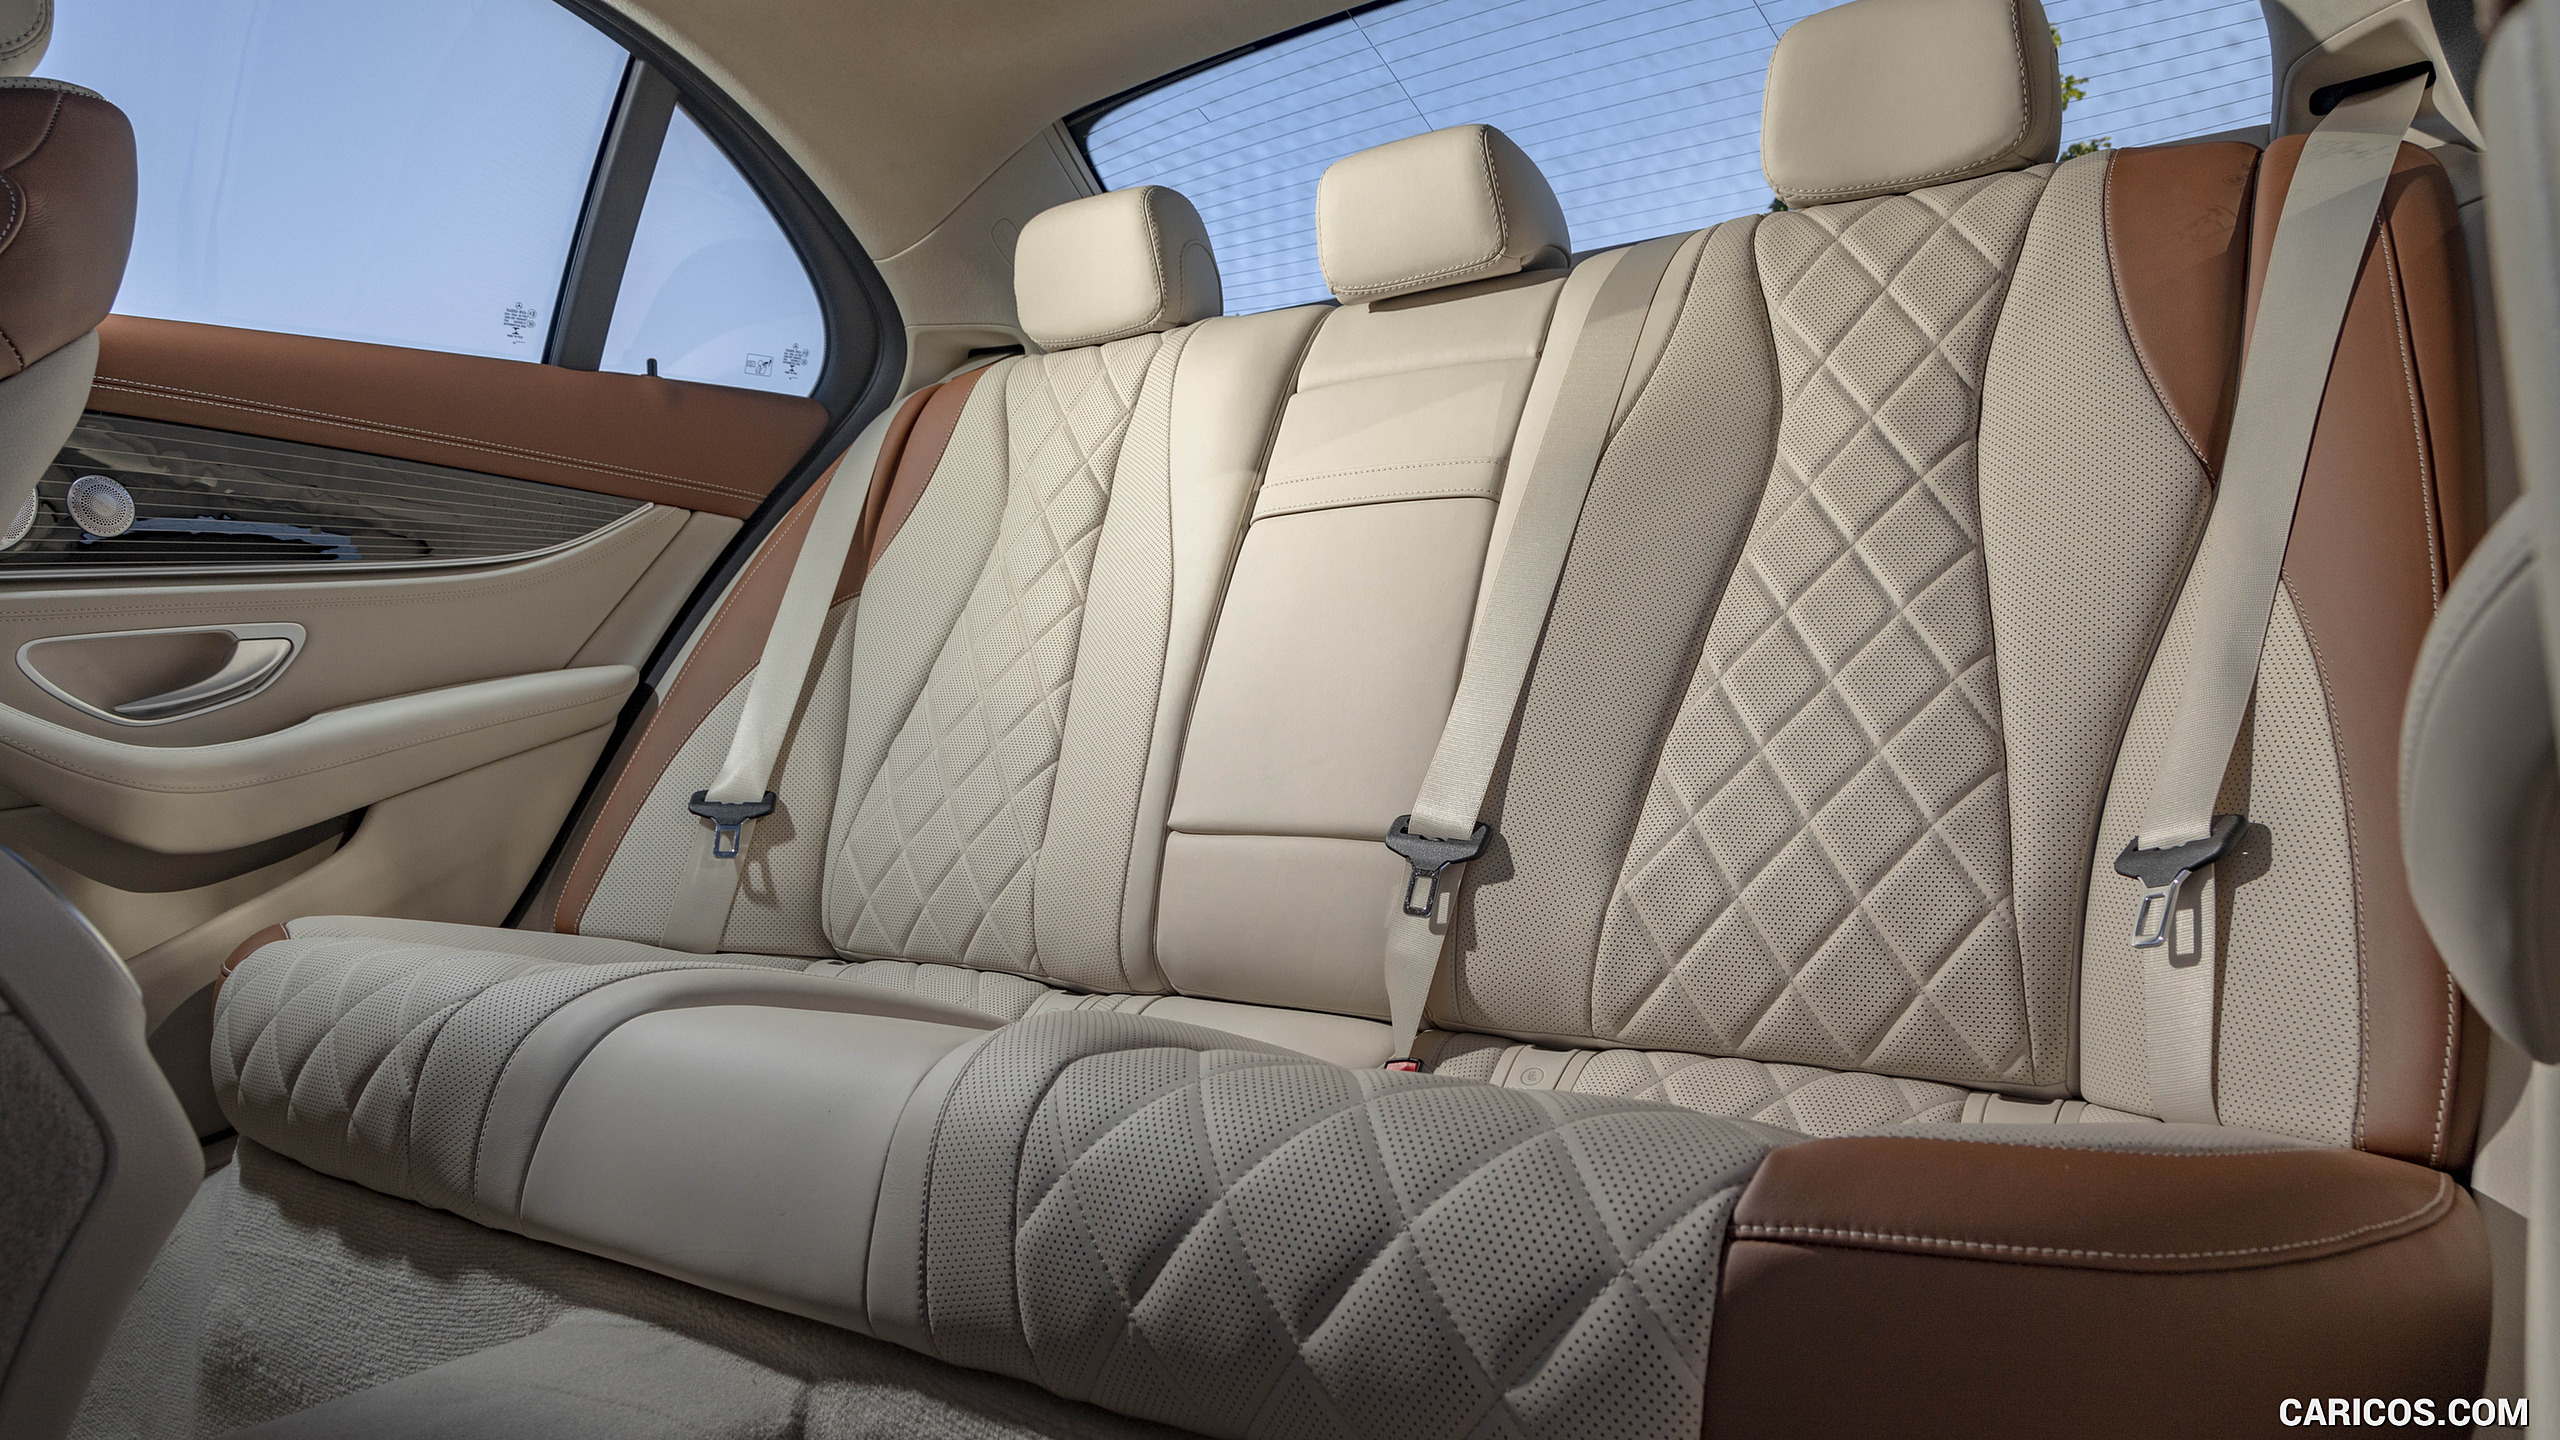 2021 Mercedes-Benz E 350 4MATIC Sedan (US-Spec) - Interior, Rear Seats, #107 of 144